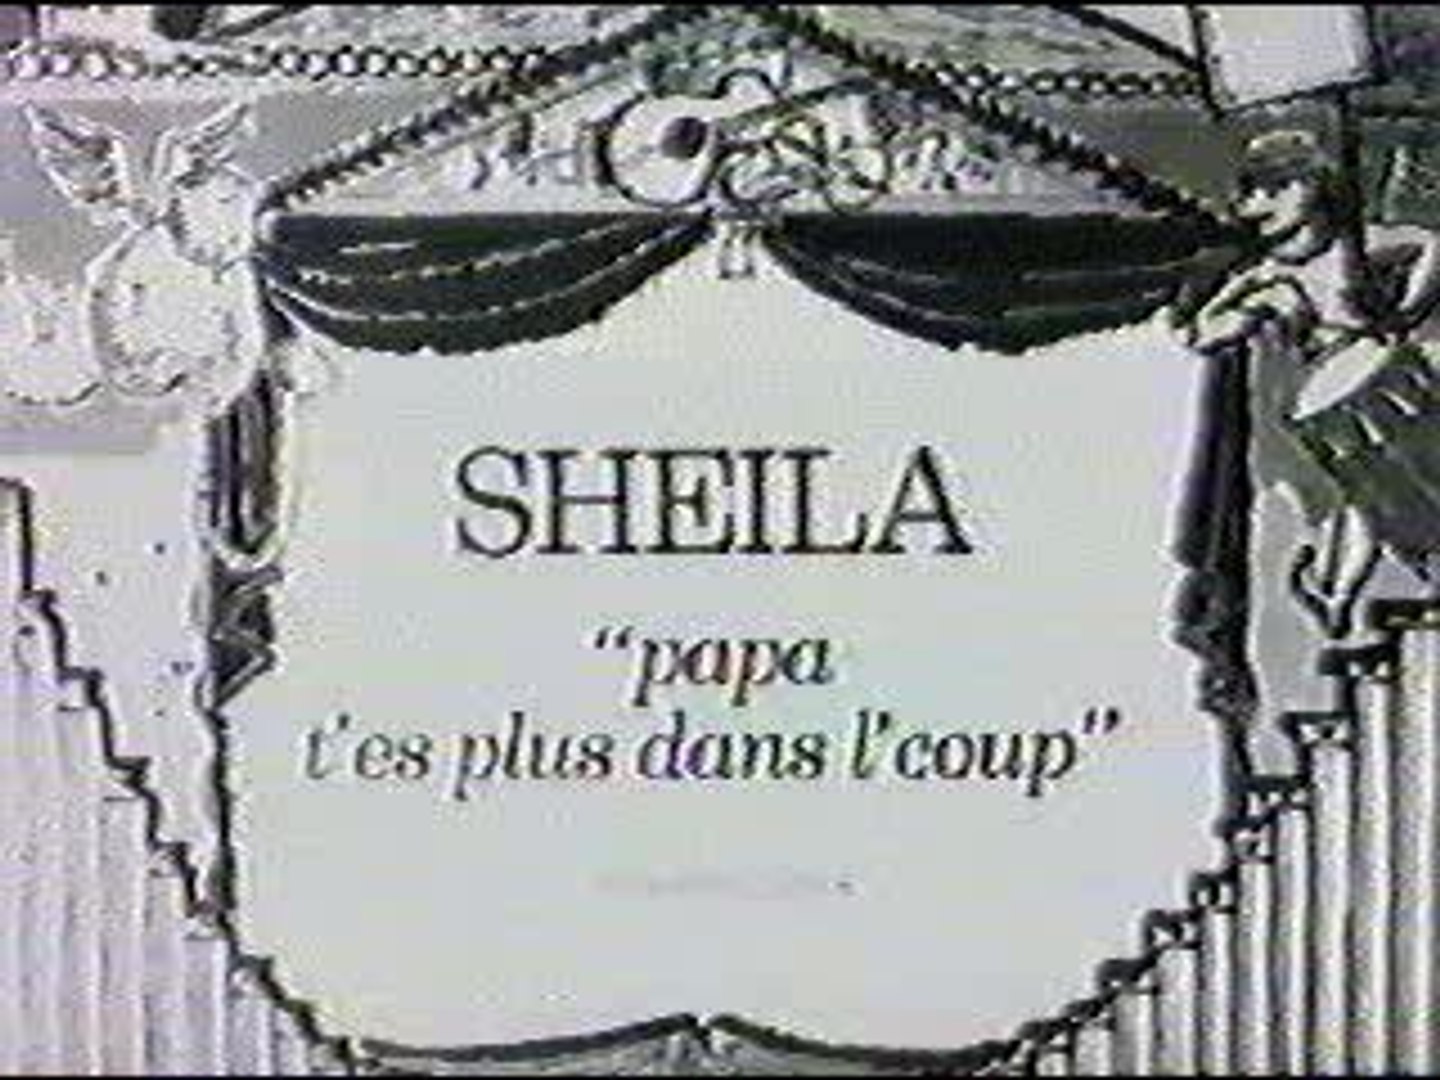 Sheila - Papa t'es plus dans l'coup - video Dailymotion